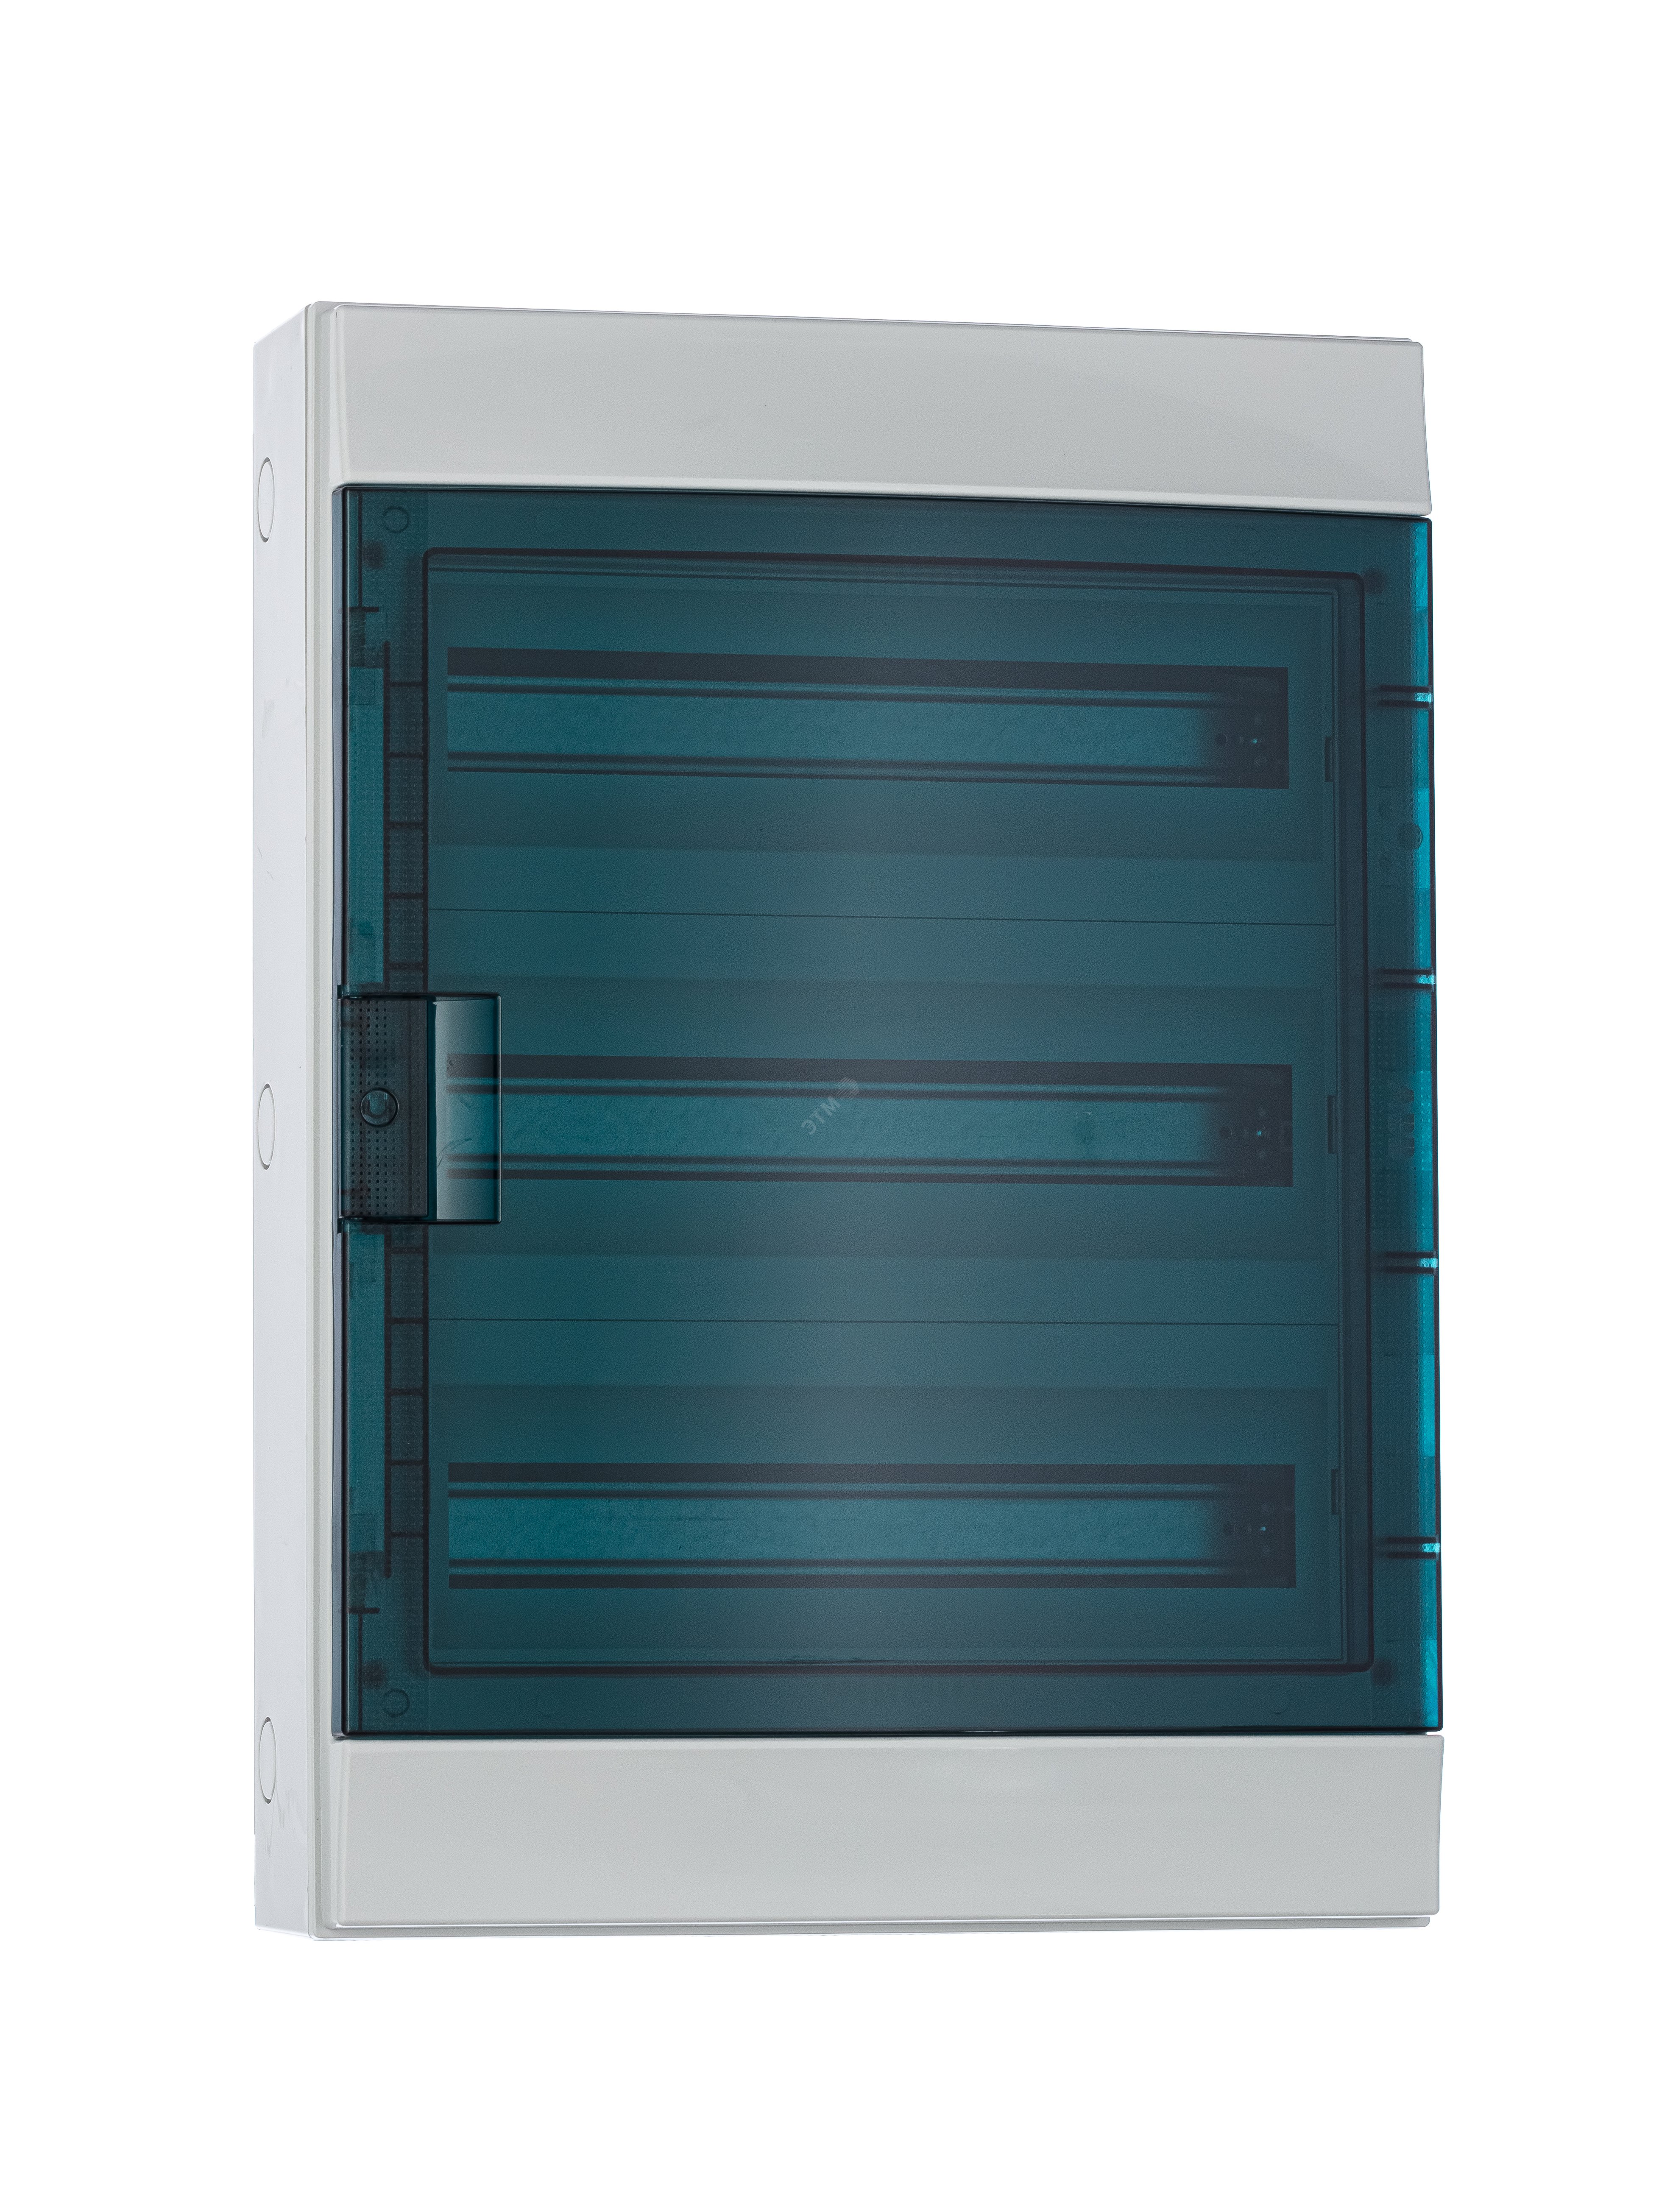 Щит распределительный навесной ЩРн-п-54 пластиковый Mistral65 серая прозрачная дверь с клеммами IP65 (65P18X32A) 1SLM006501A1208 ABB - превью 4